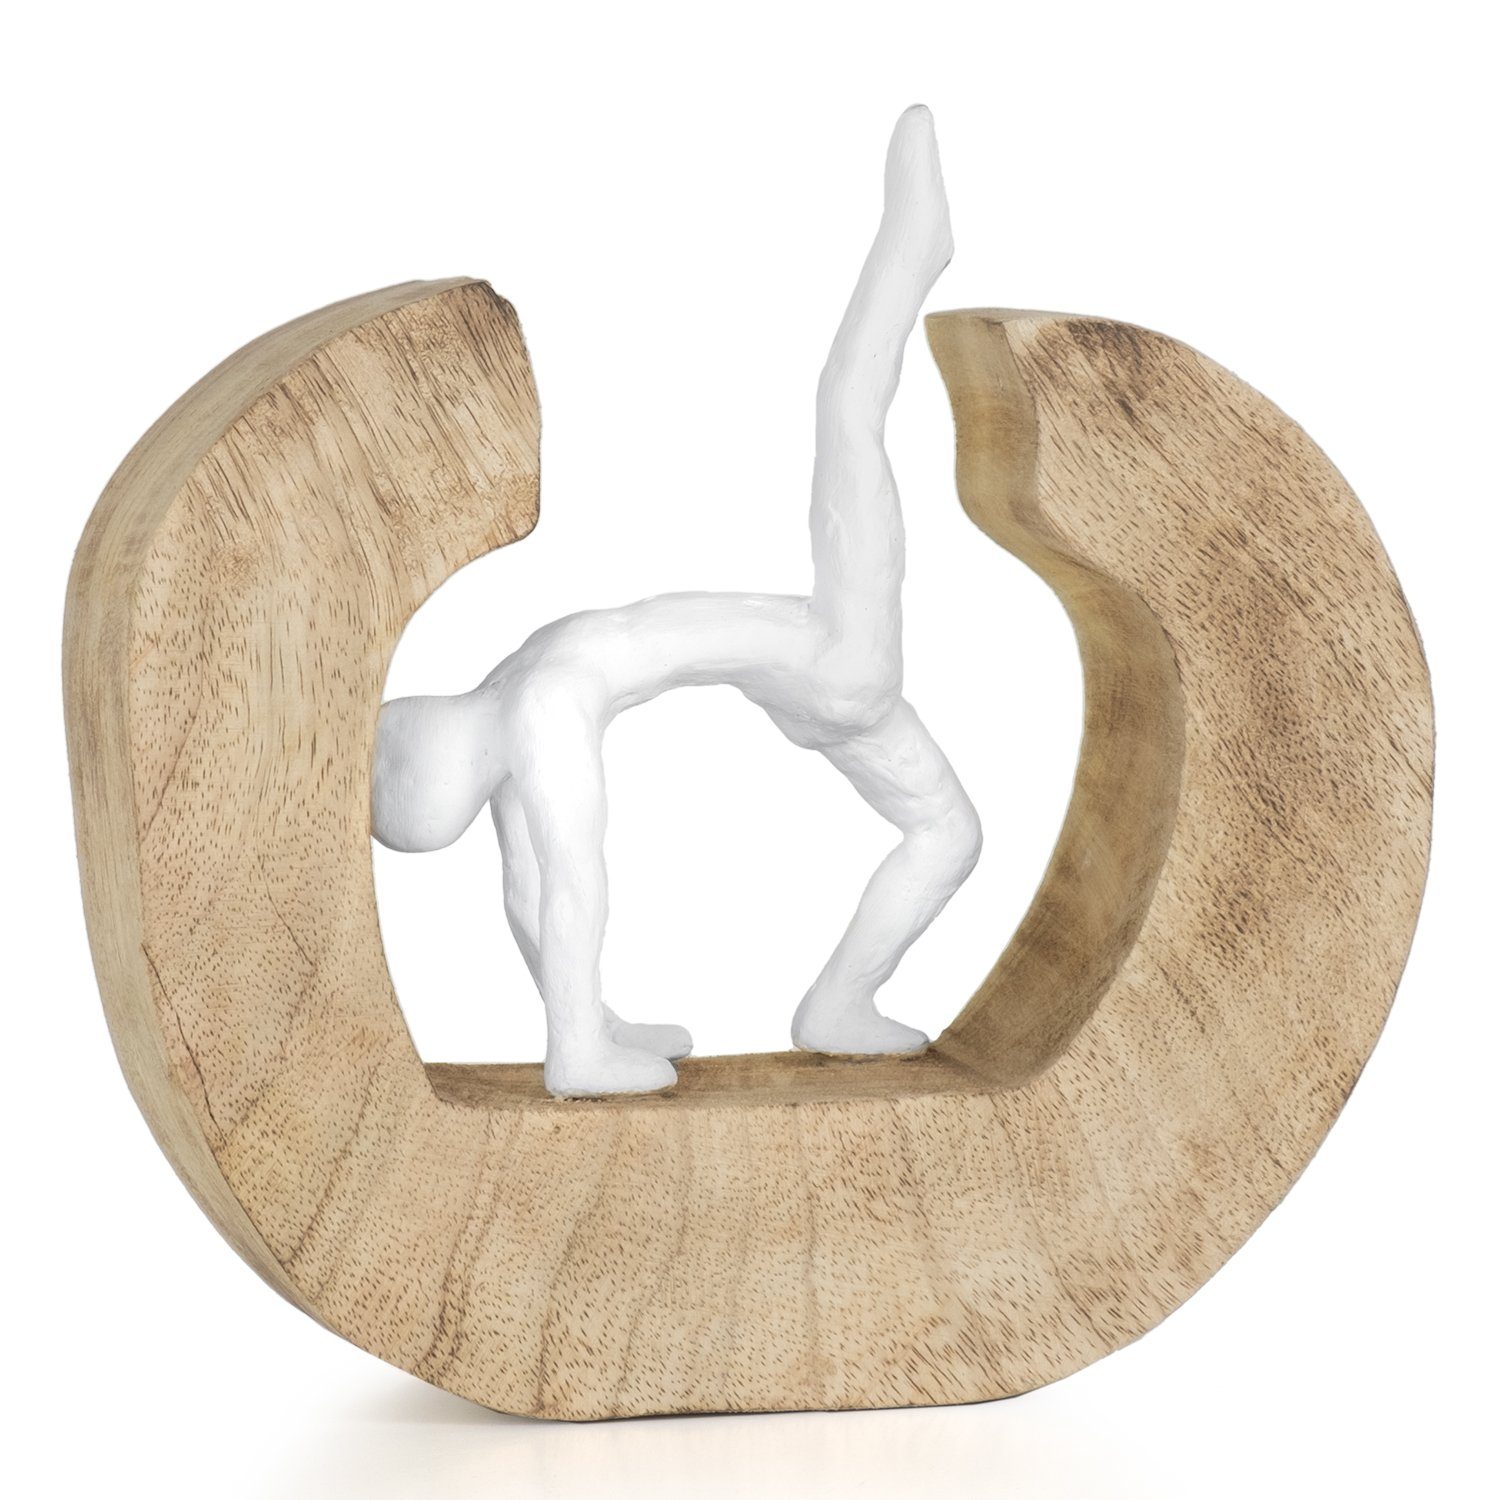 Moritz Skulptur Yoga das Figuren Deko Holzdeko Wohnzimmer Holzdekoration Holz Rad, Objekte